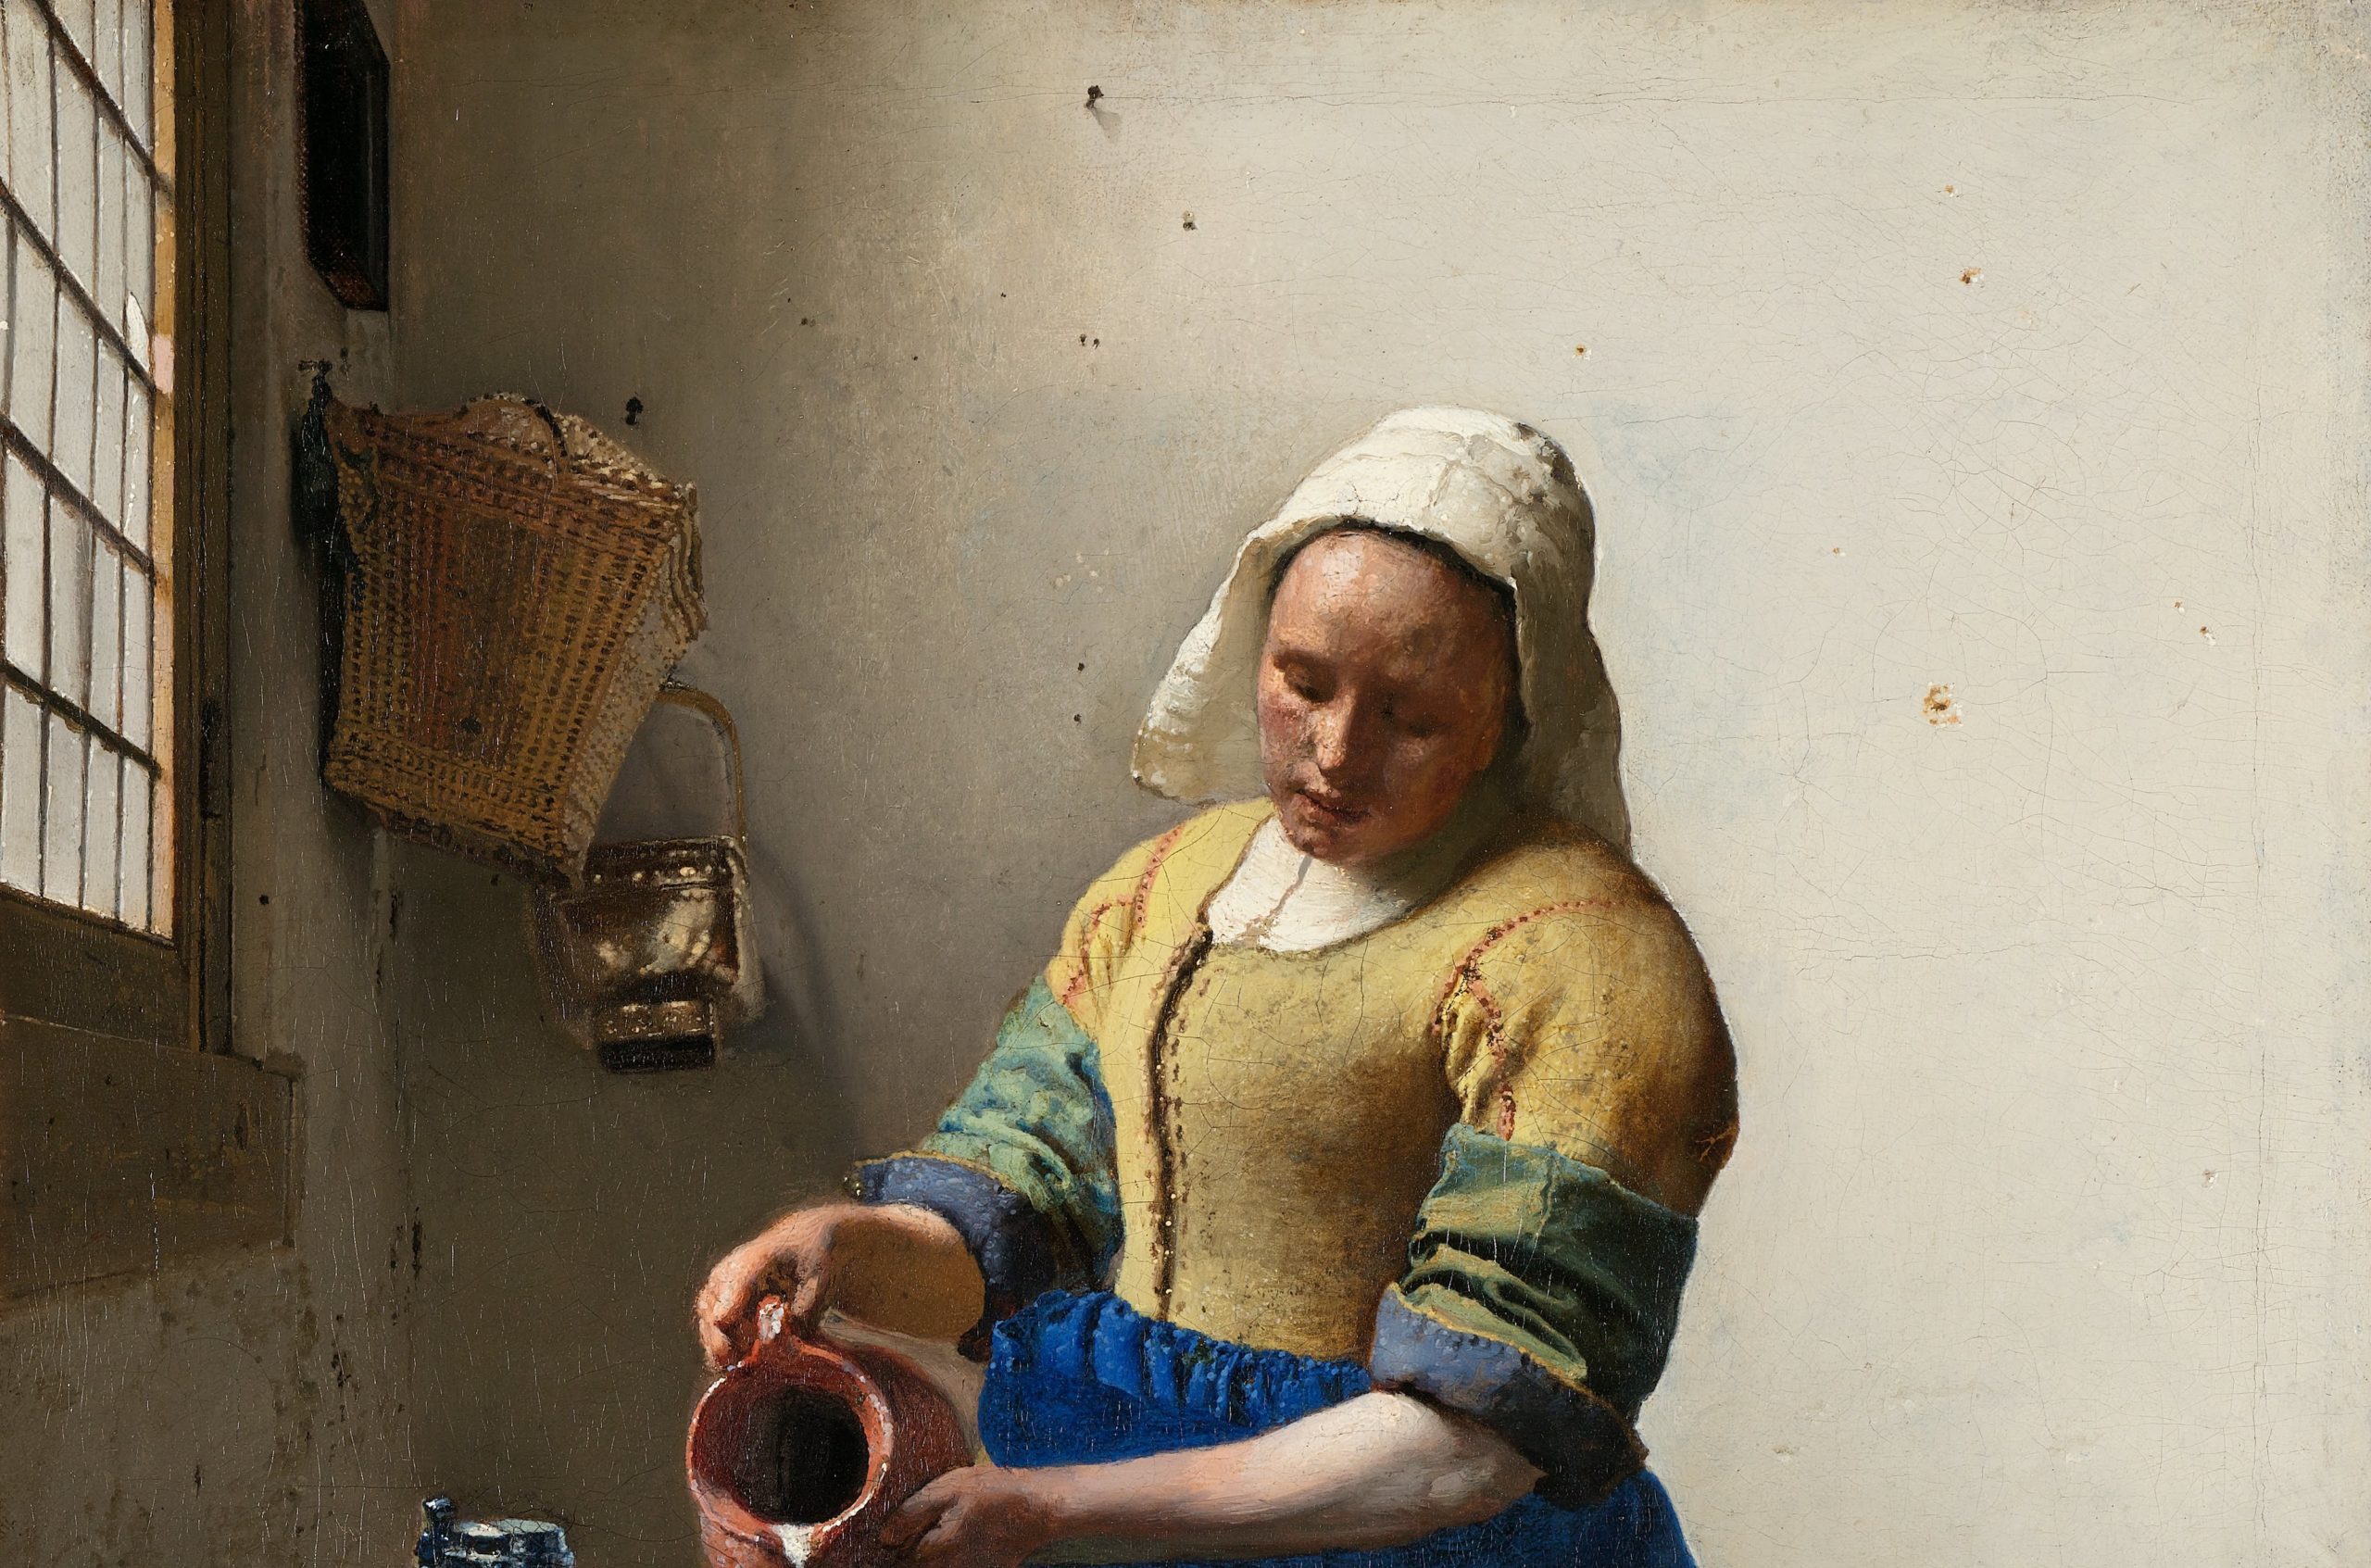 Vermeer & Monet at the Met & MoMA